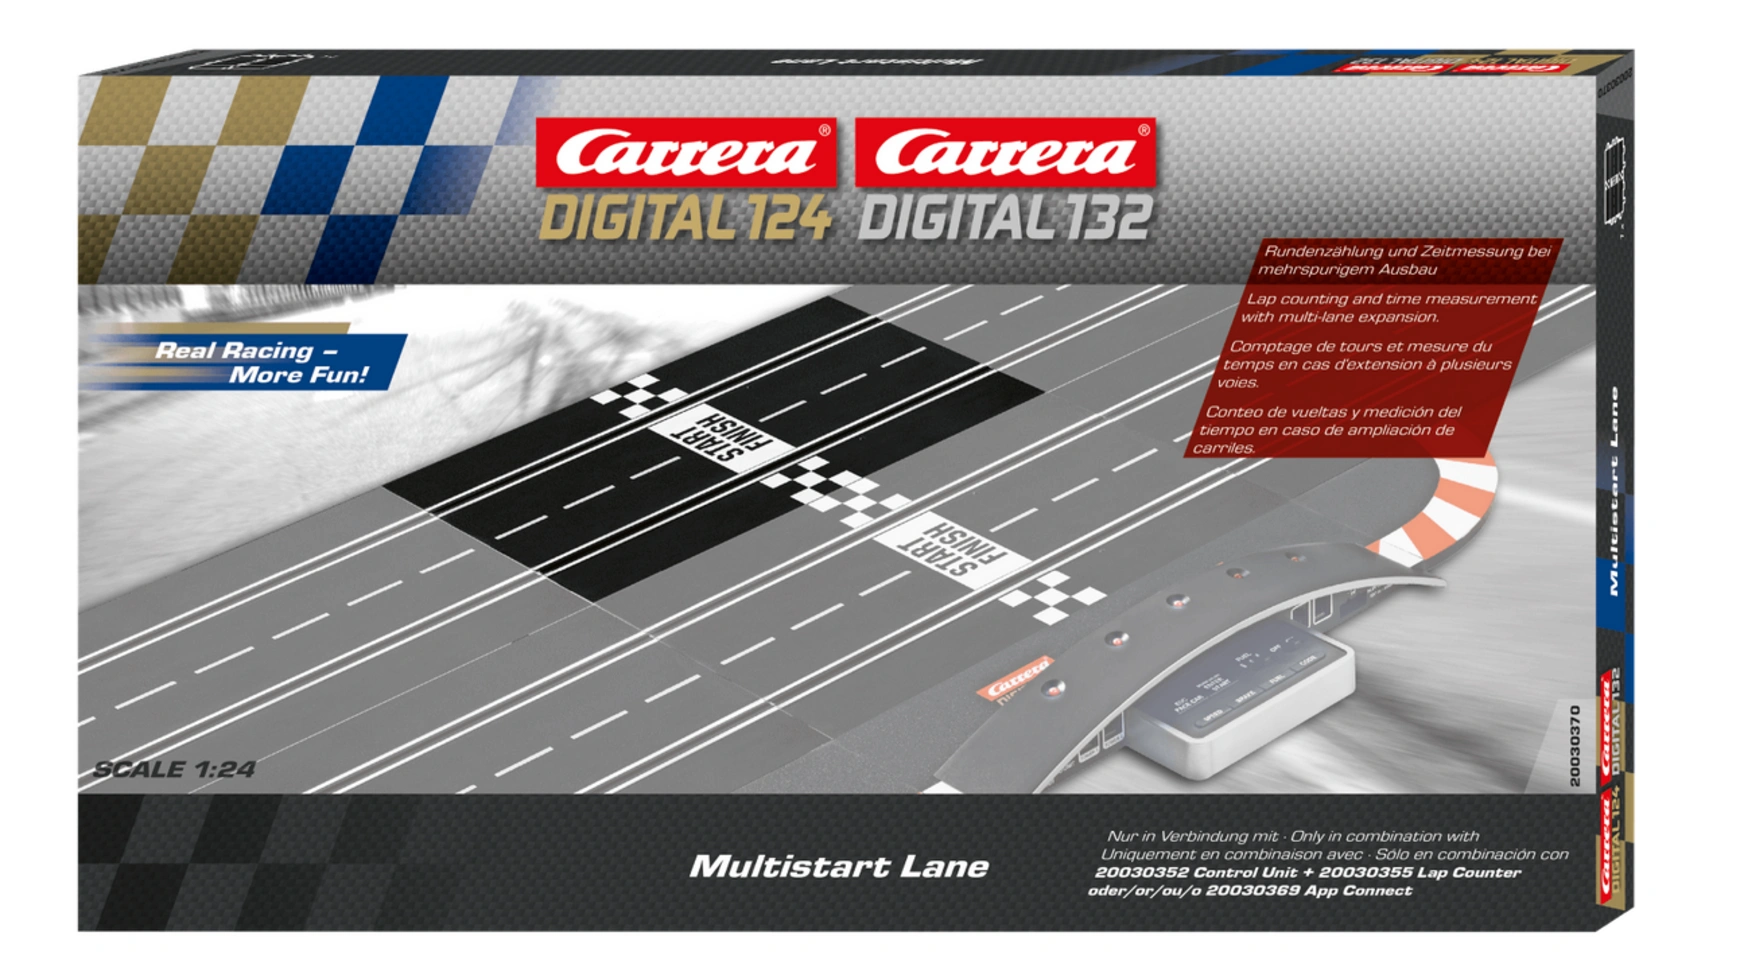 Carrera DIGITAL 124 Многозаходная полоса дополнительные секции carrera 20030343 для digital 124 digital 132